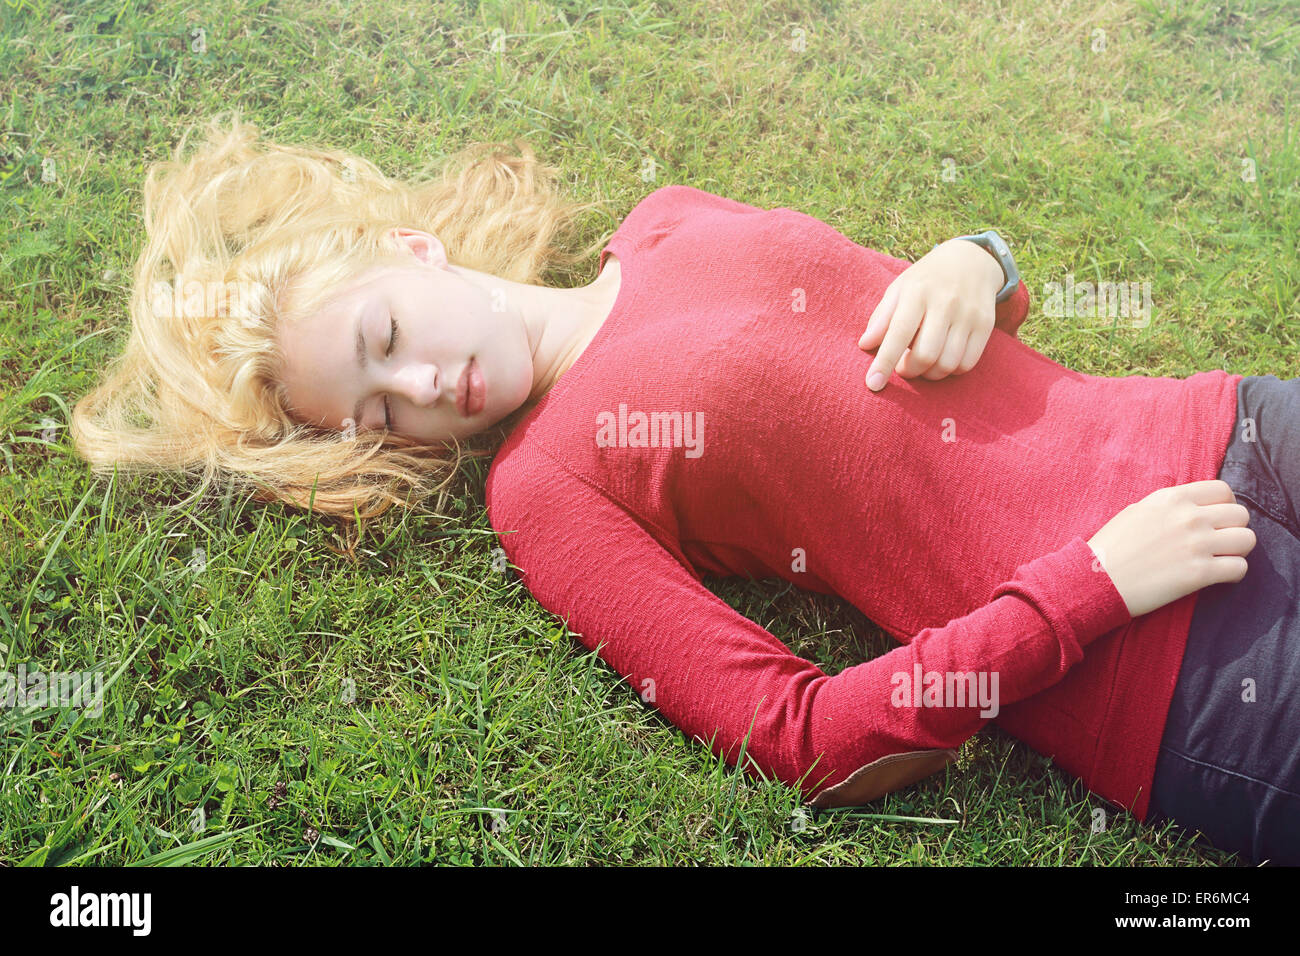 Jeune fille avec de longs cheveux blonds couché dans l'herbe Banque D'Images